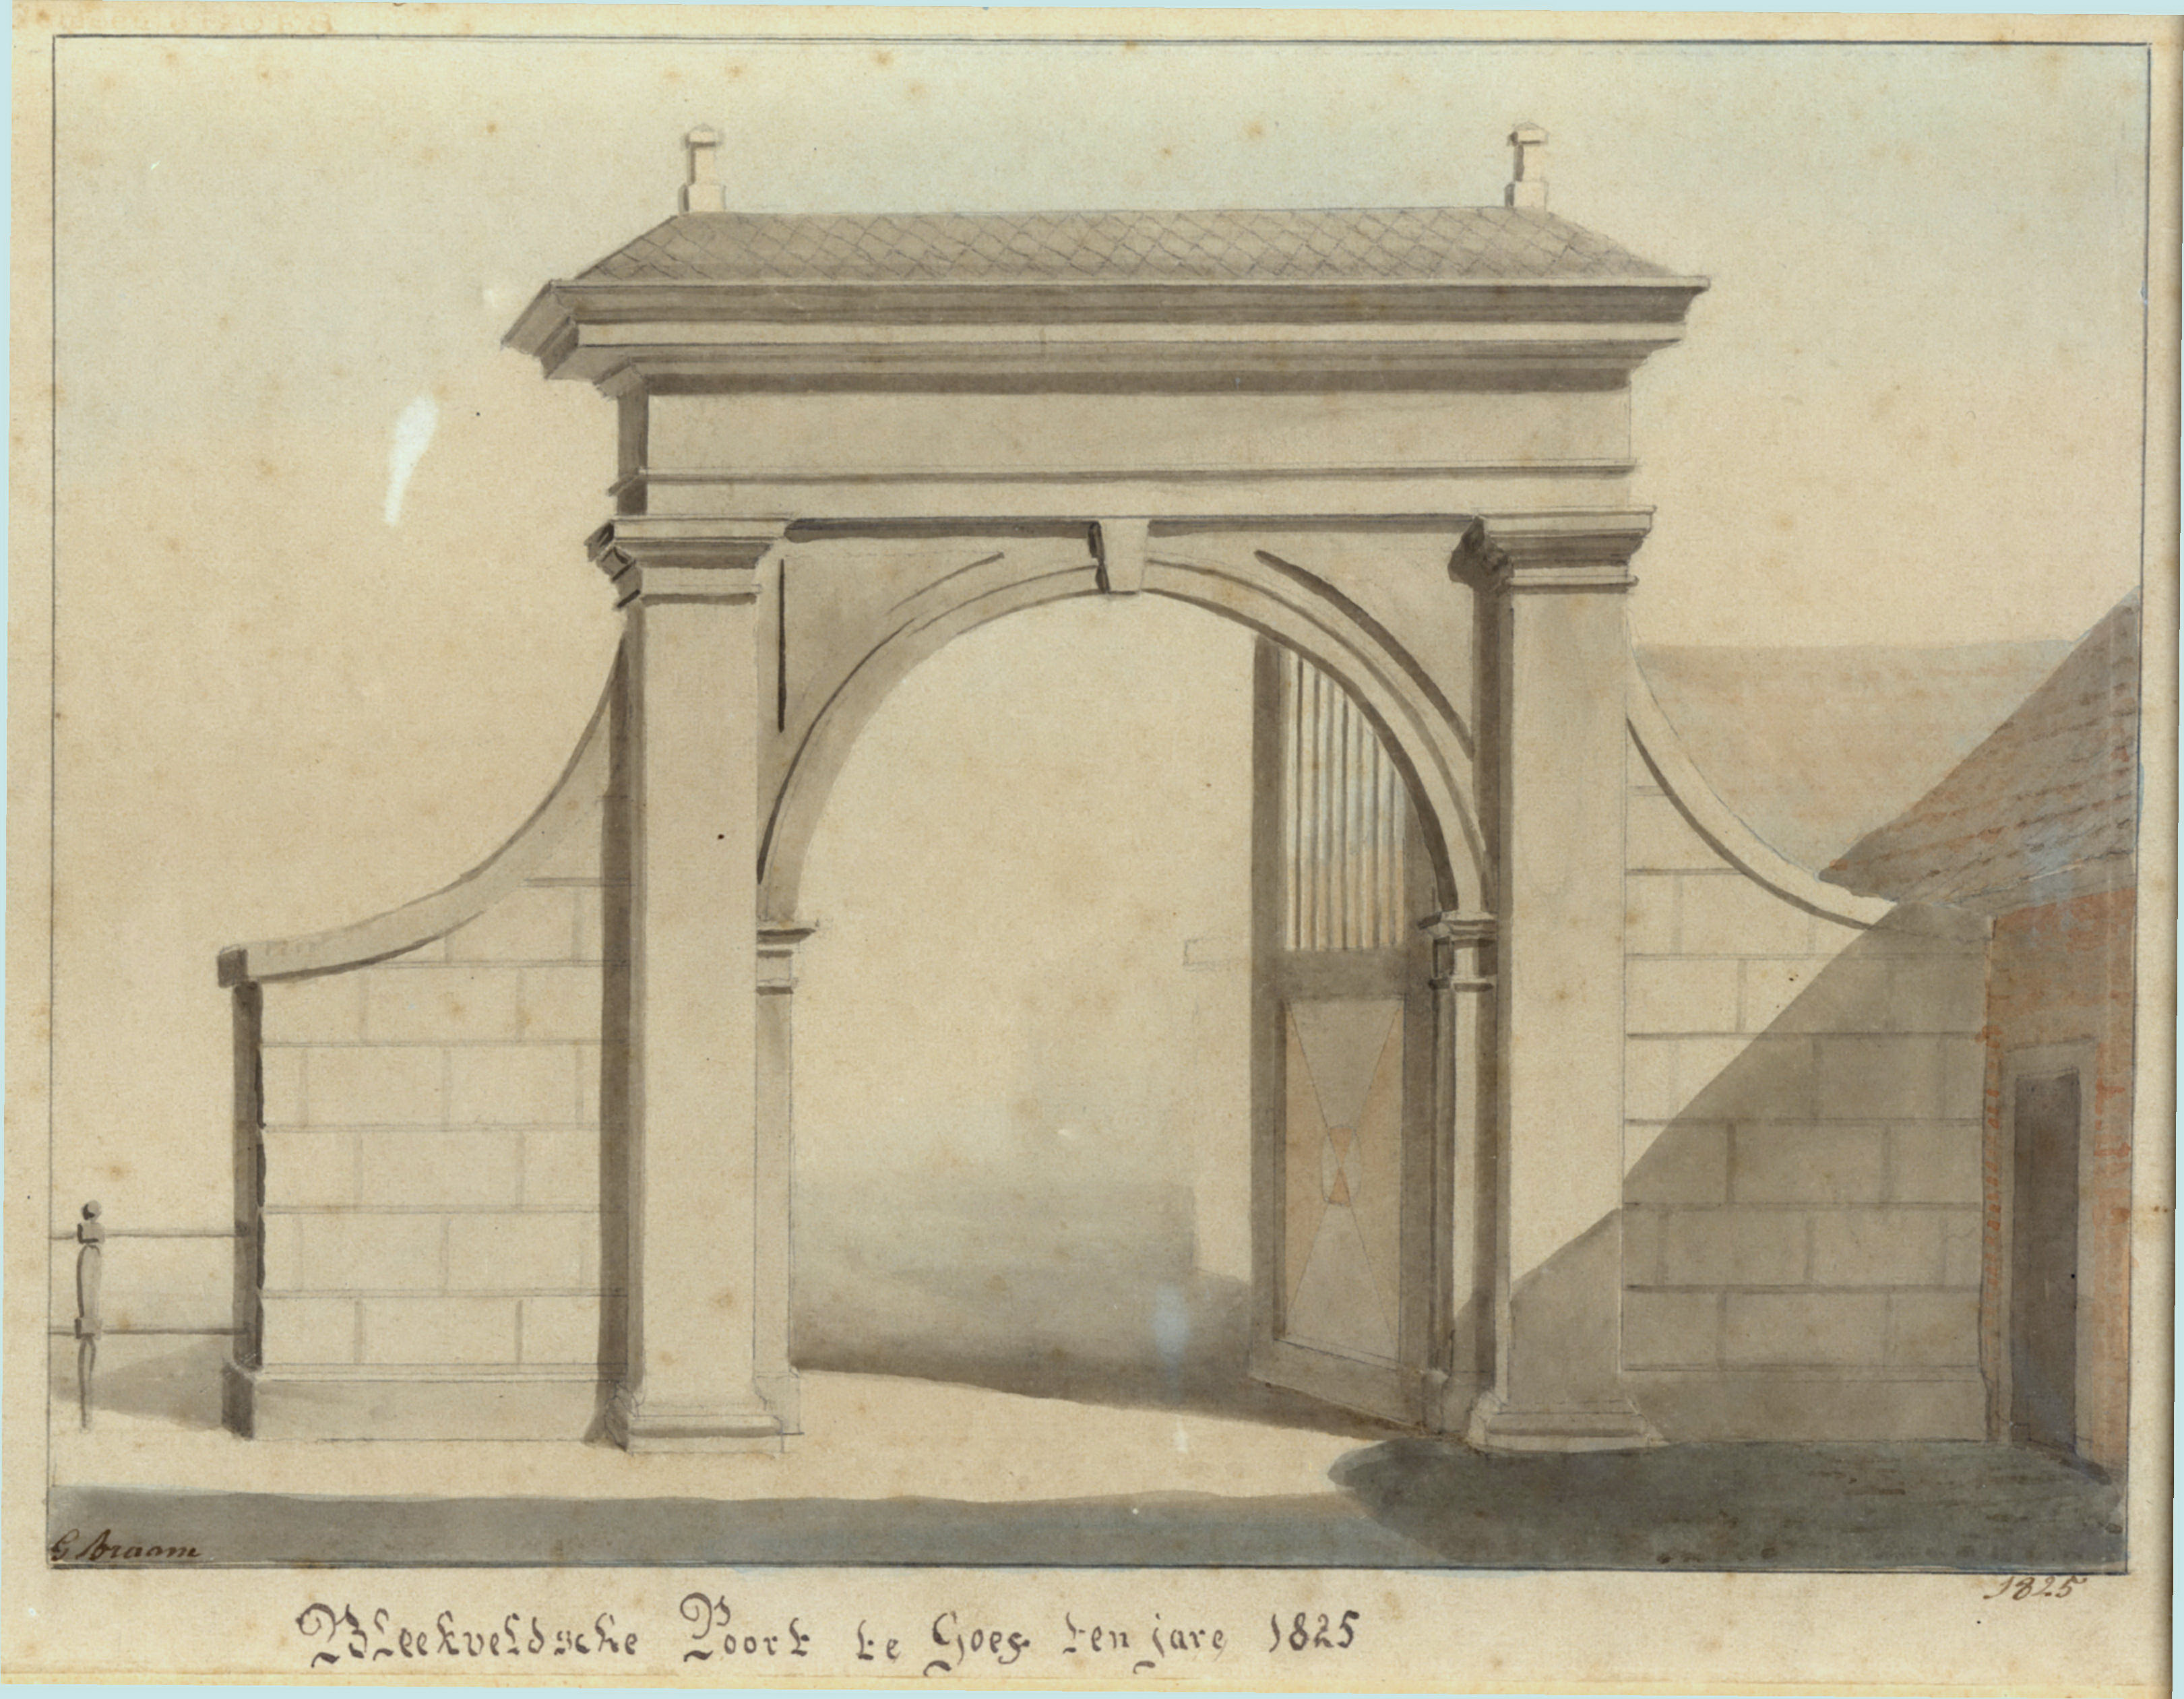 De Bleekveldsepoort in 1825, G. Braam. GAG.HTA.